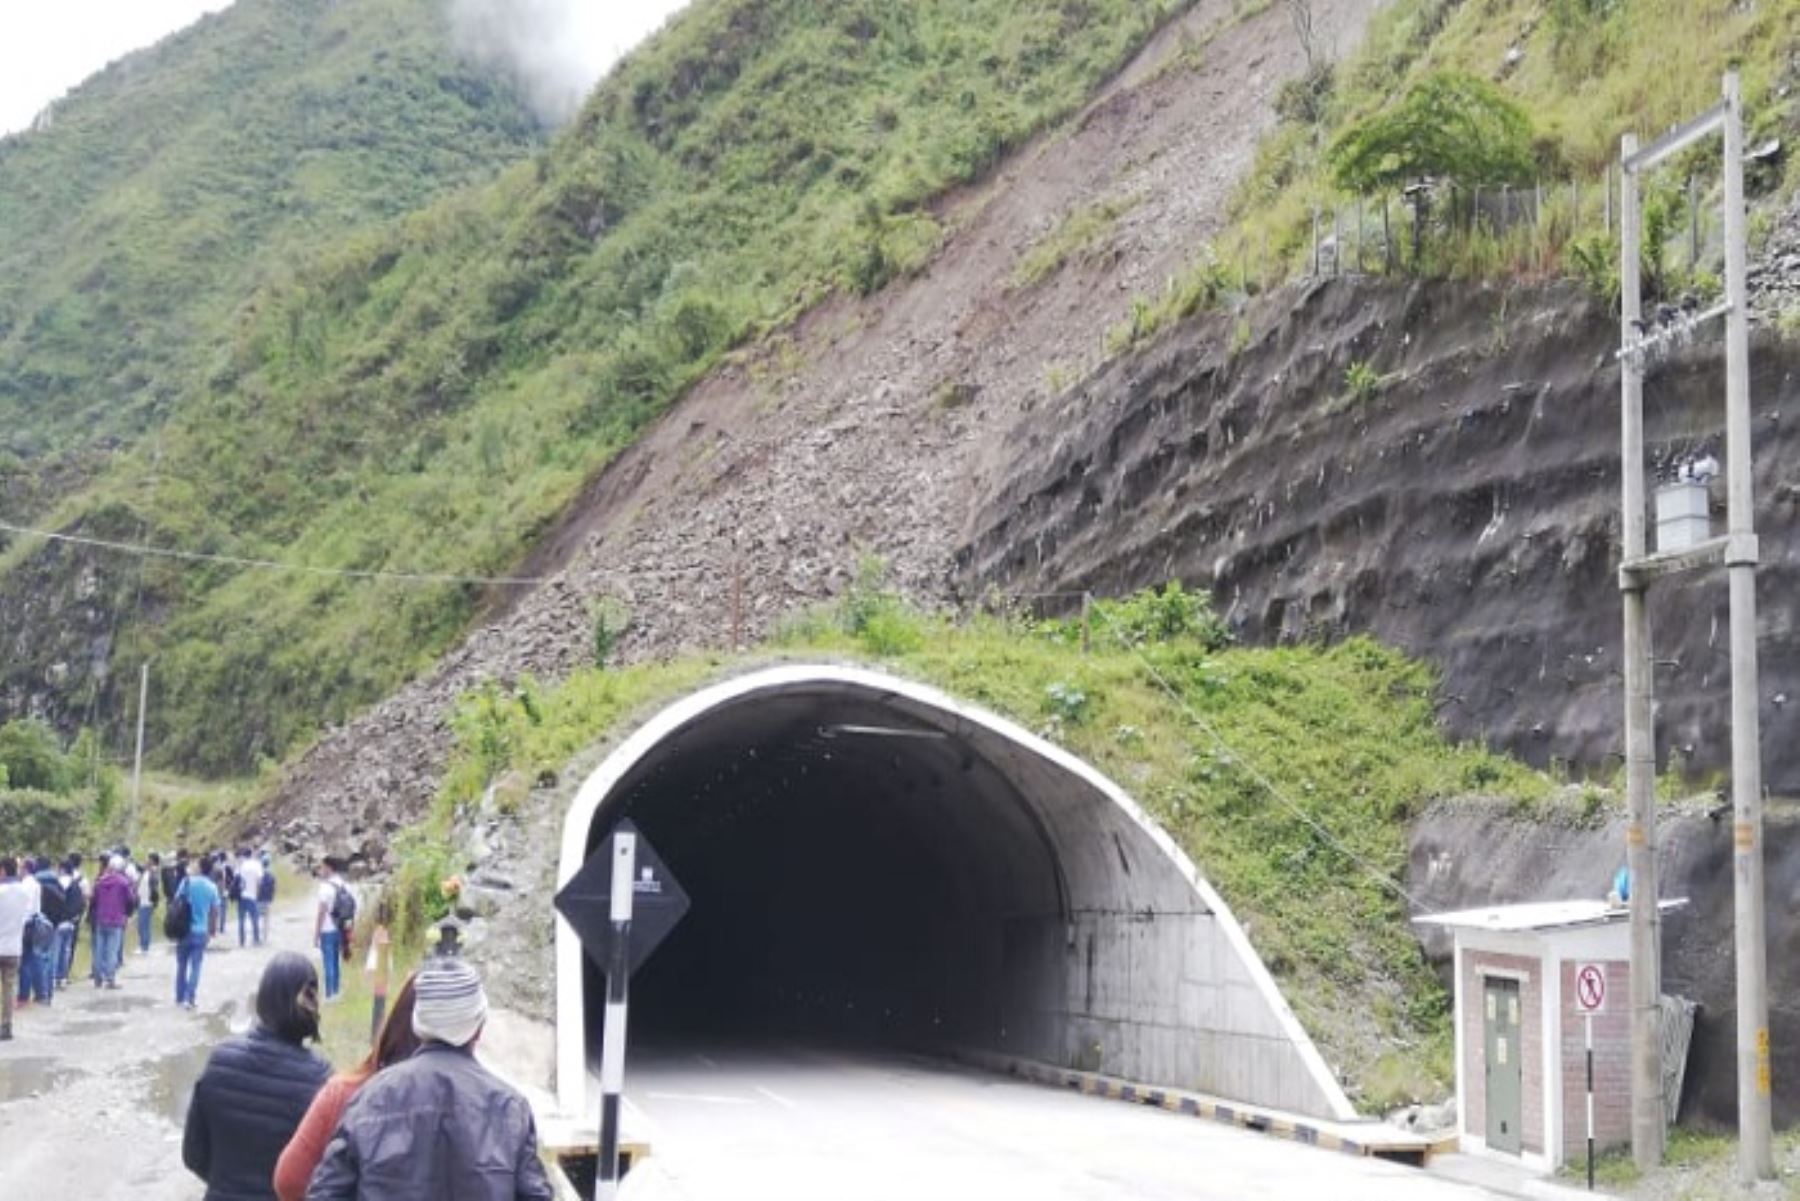 Un deslizamiento de lodo y piedras de considerable dimensión interrumpe el tránsito al inicio del túnel Yanango, en dirección Tarma - La Merced (Ruta PE 22B), km 77+100, en la región Junín, informó Provías Nacional.